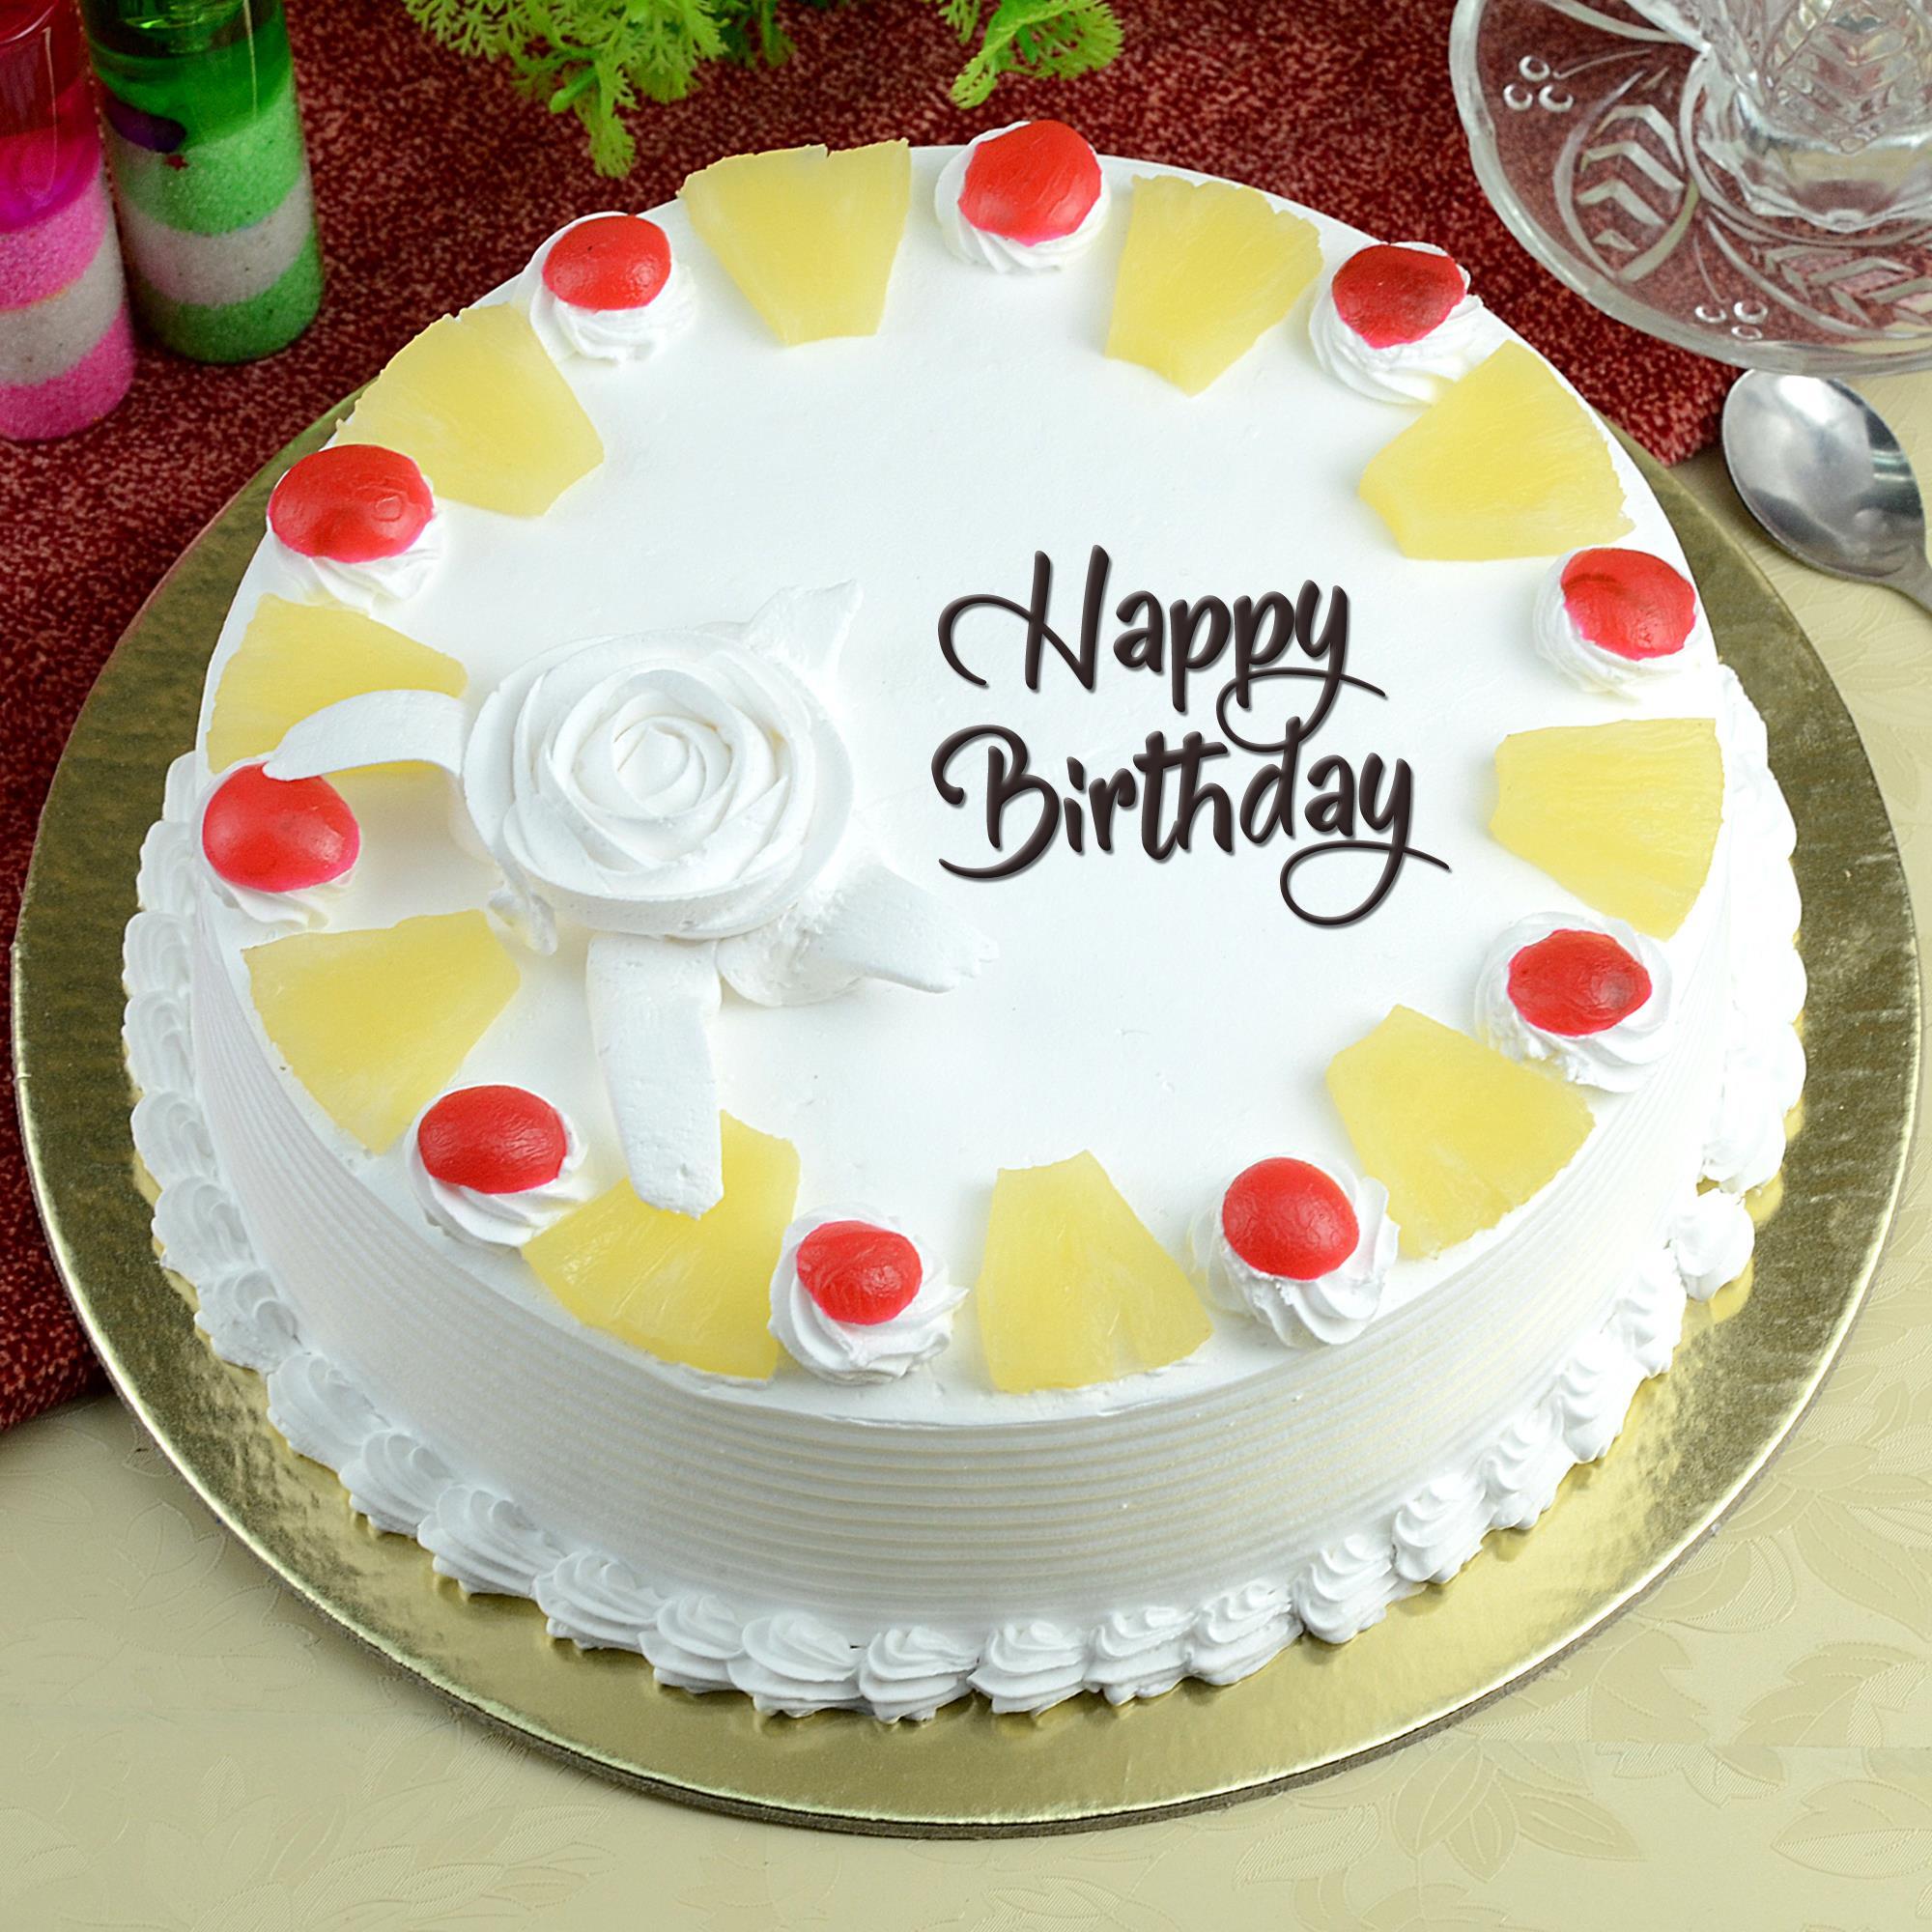 Pineapple Cake For Birthday | bakehoney.com